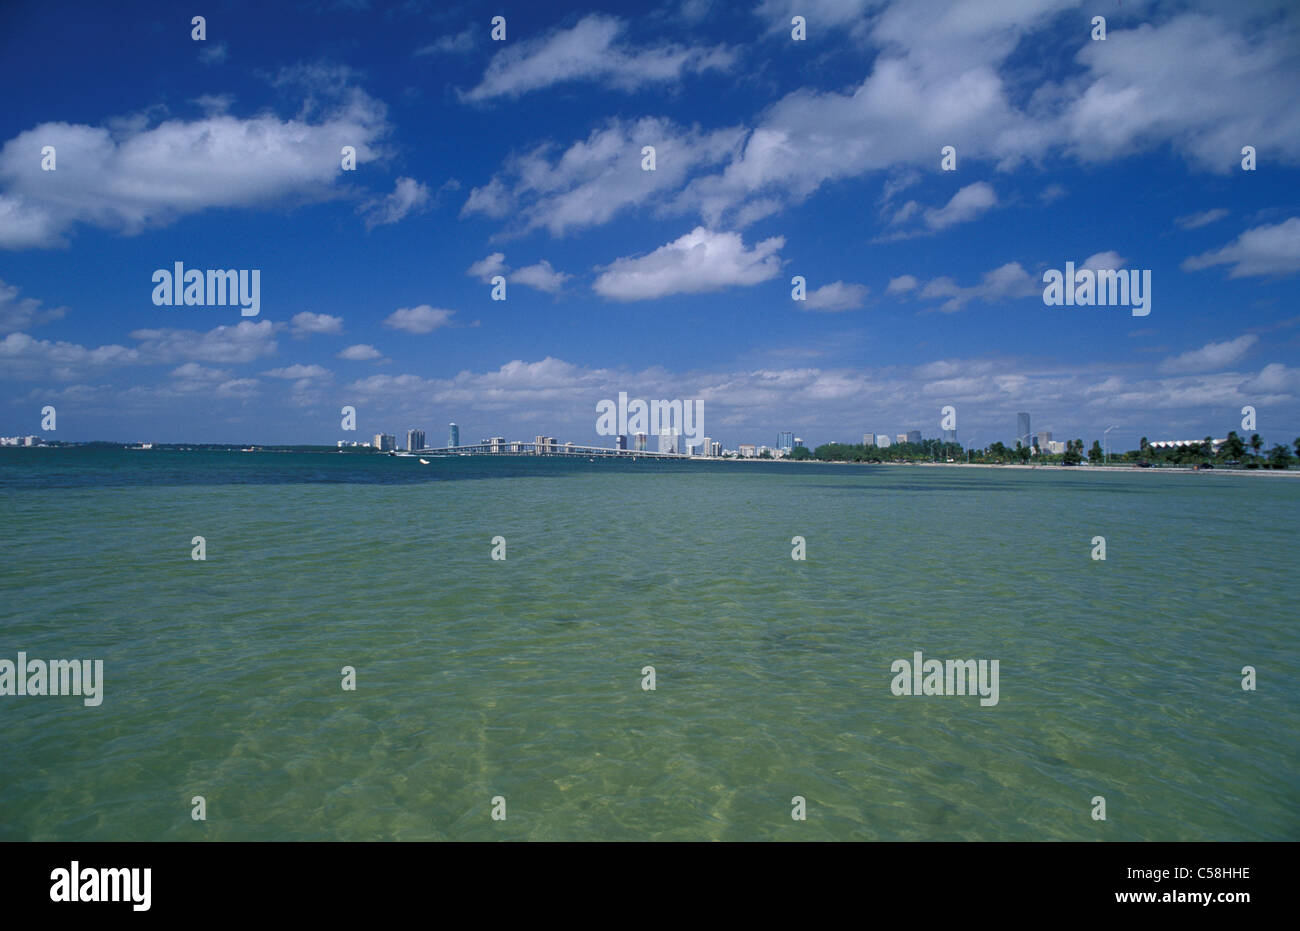 Virginia Key, Miami, Floride, USA, United States, Amérique du Nord, de la mer, de l'eau Banque D'Images